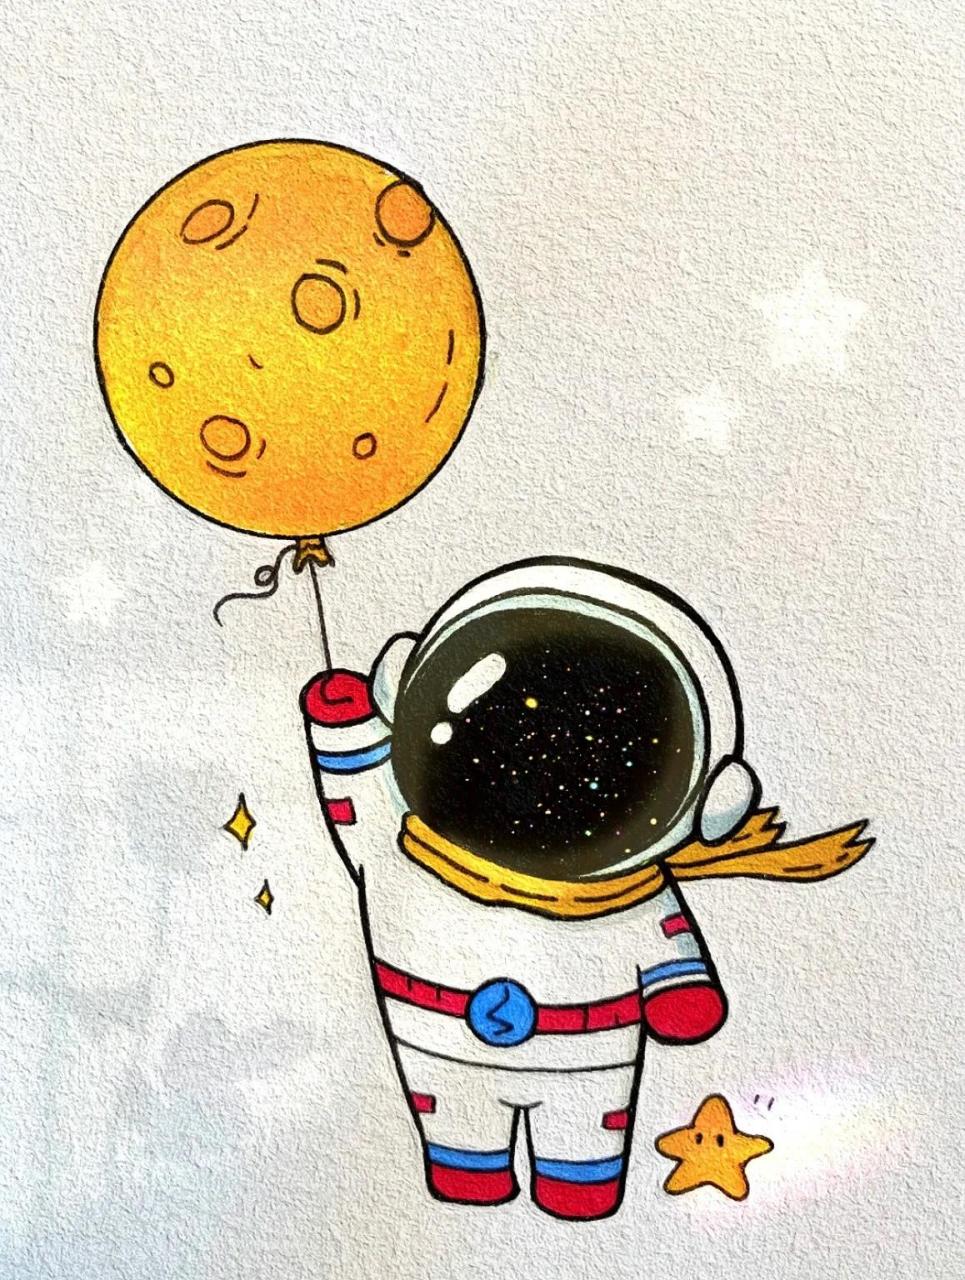 宇航员Q版简笔画 可爱图片